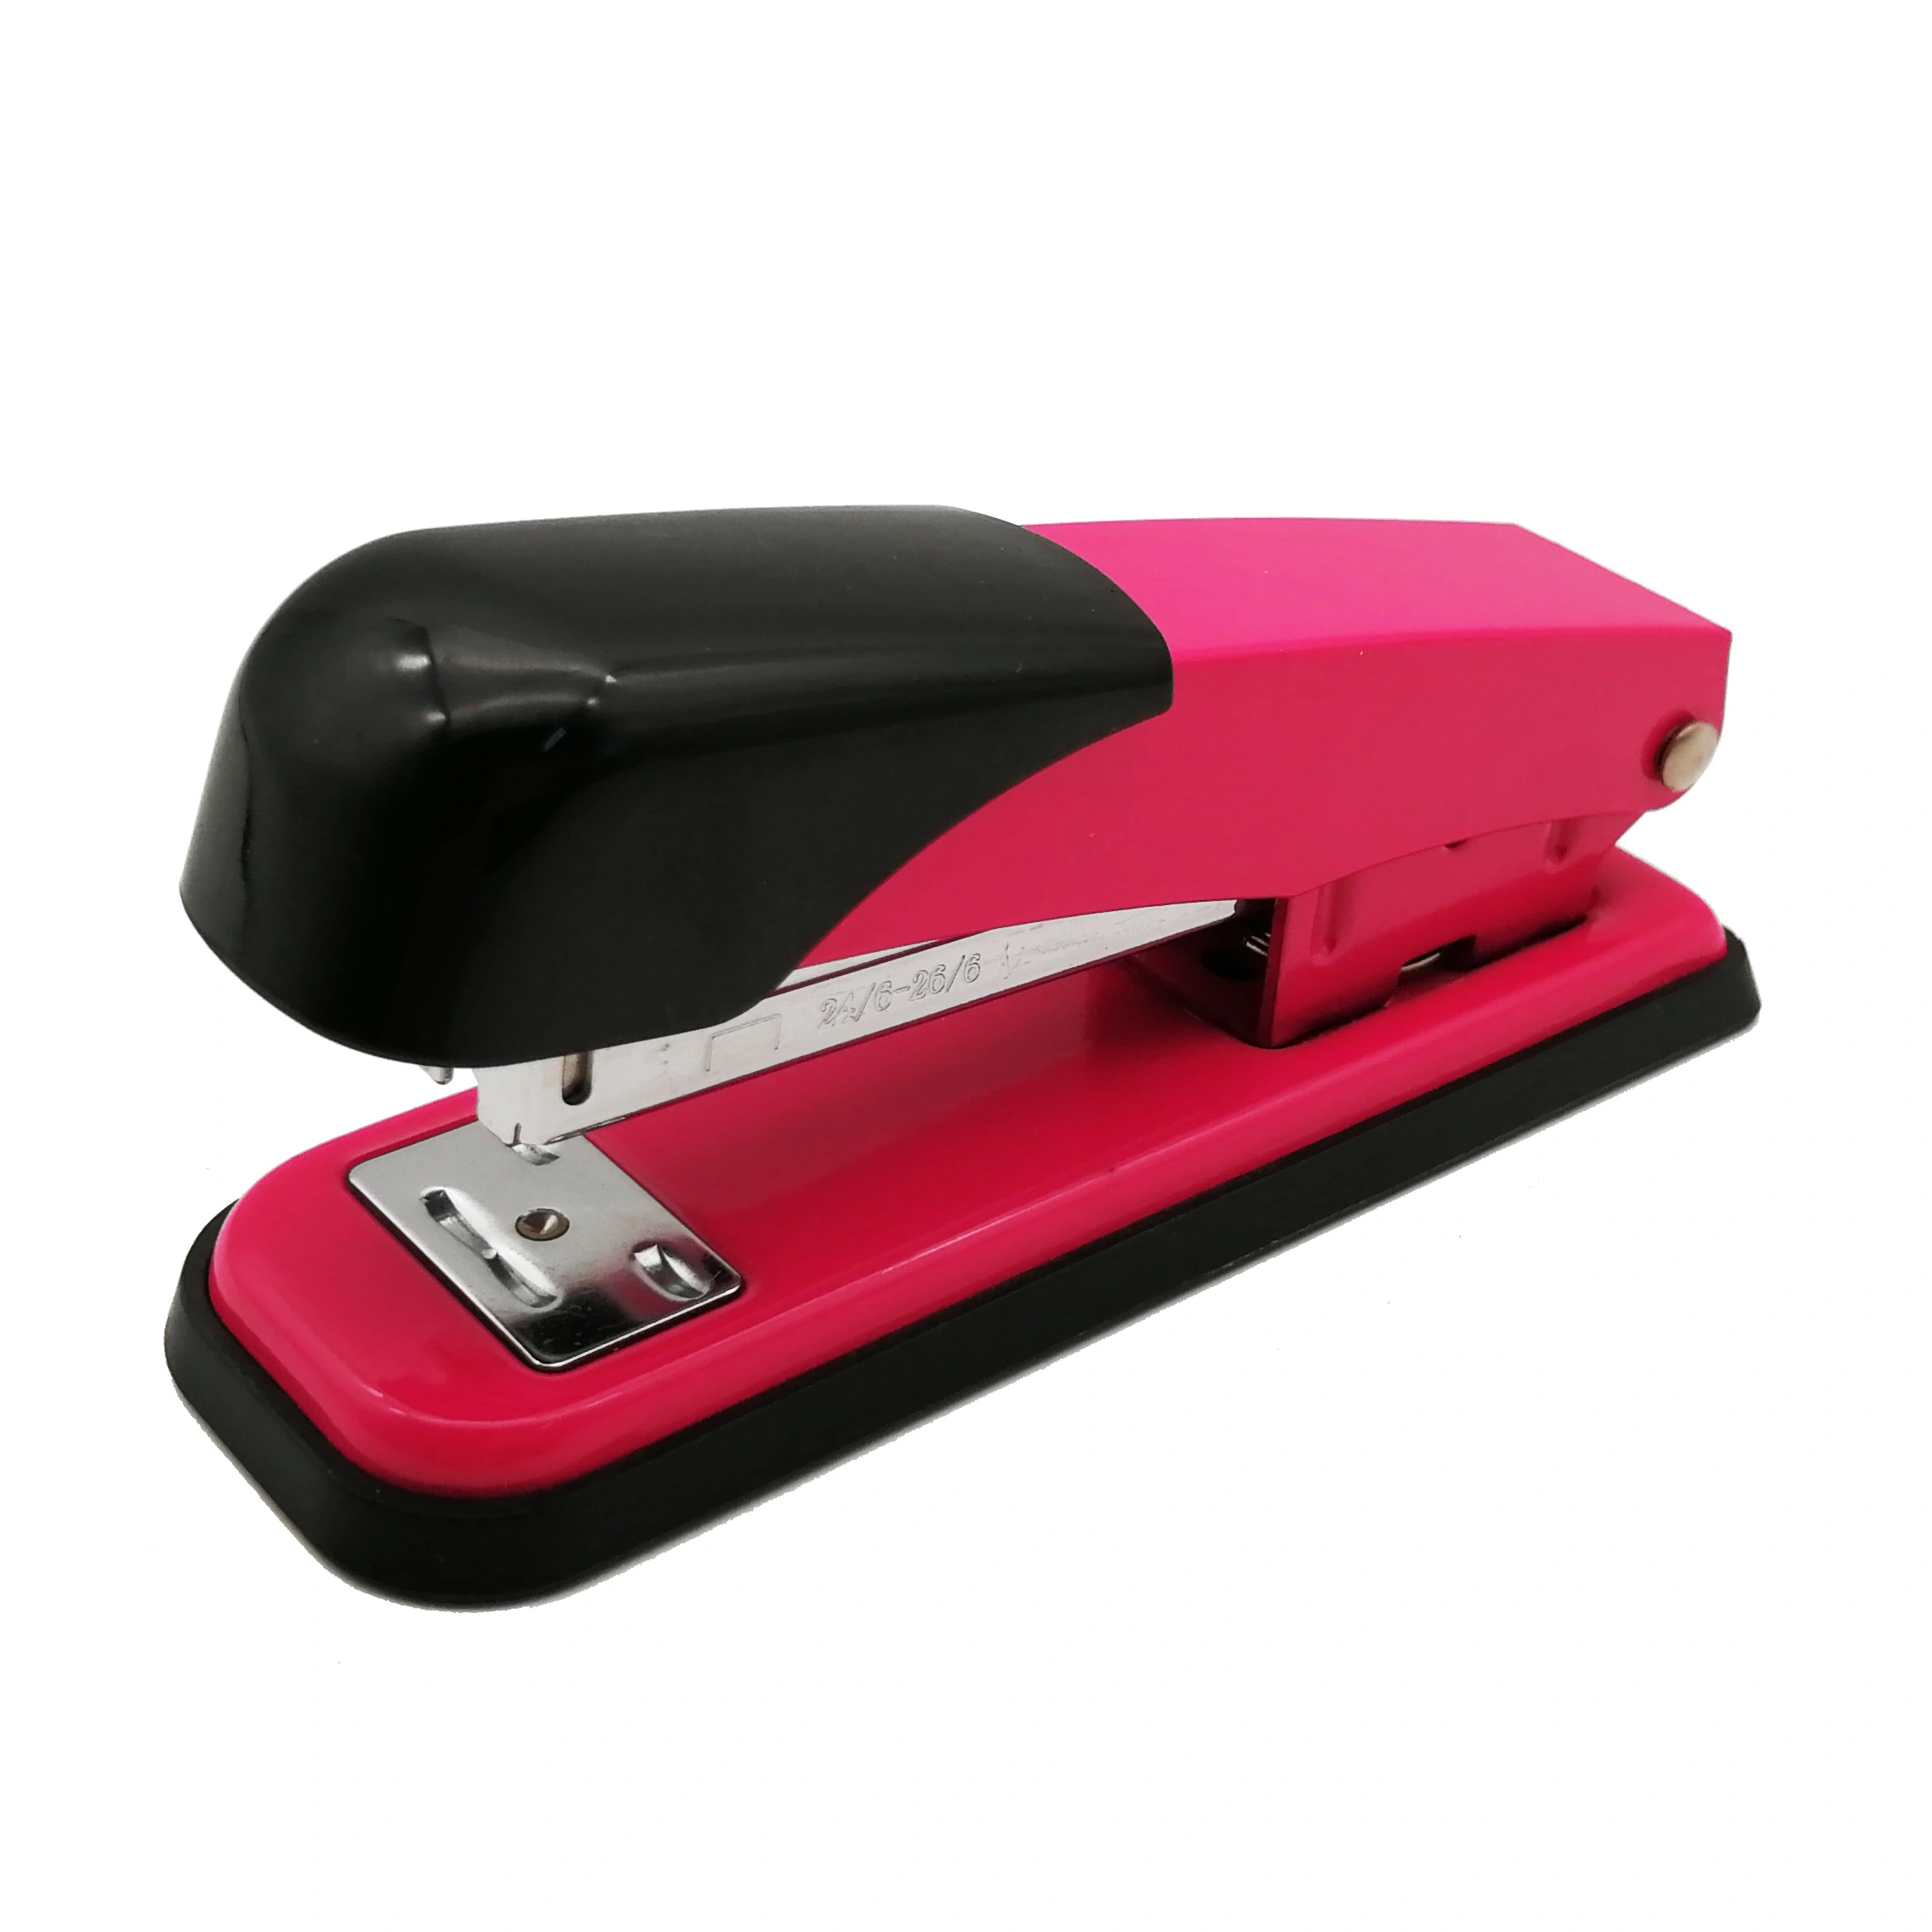 desktop office stapler from Ningbo China